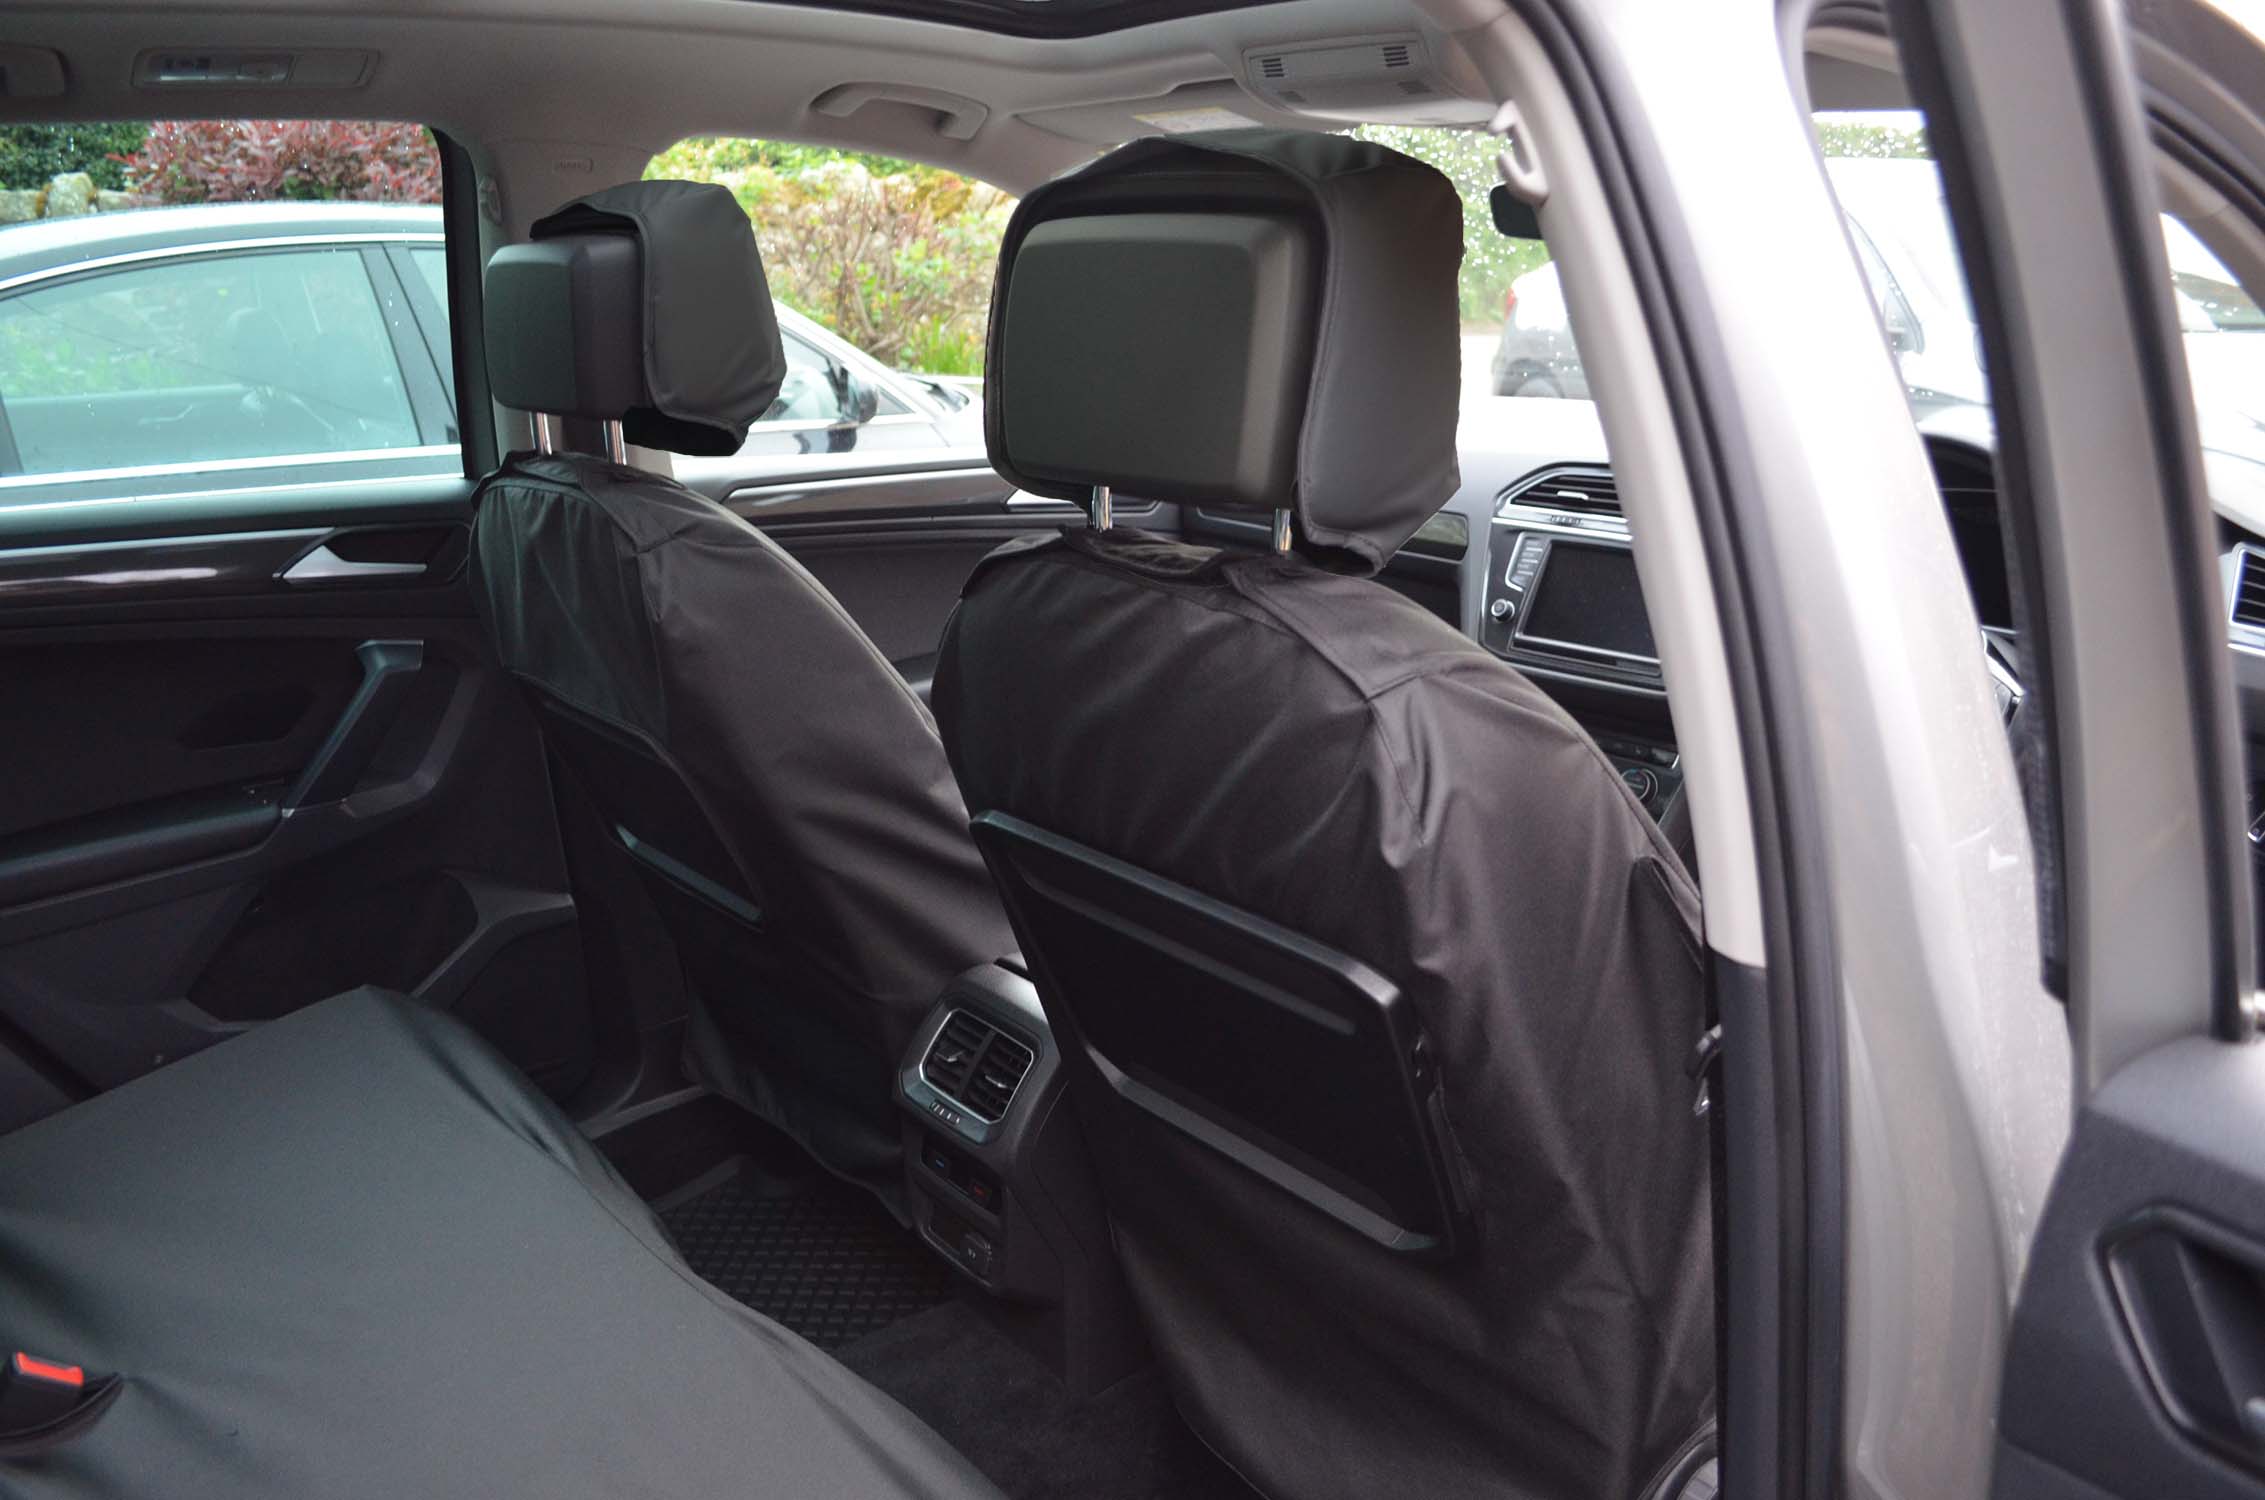 VW Volkswagen Tiguan 2016+ Seat Covers